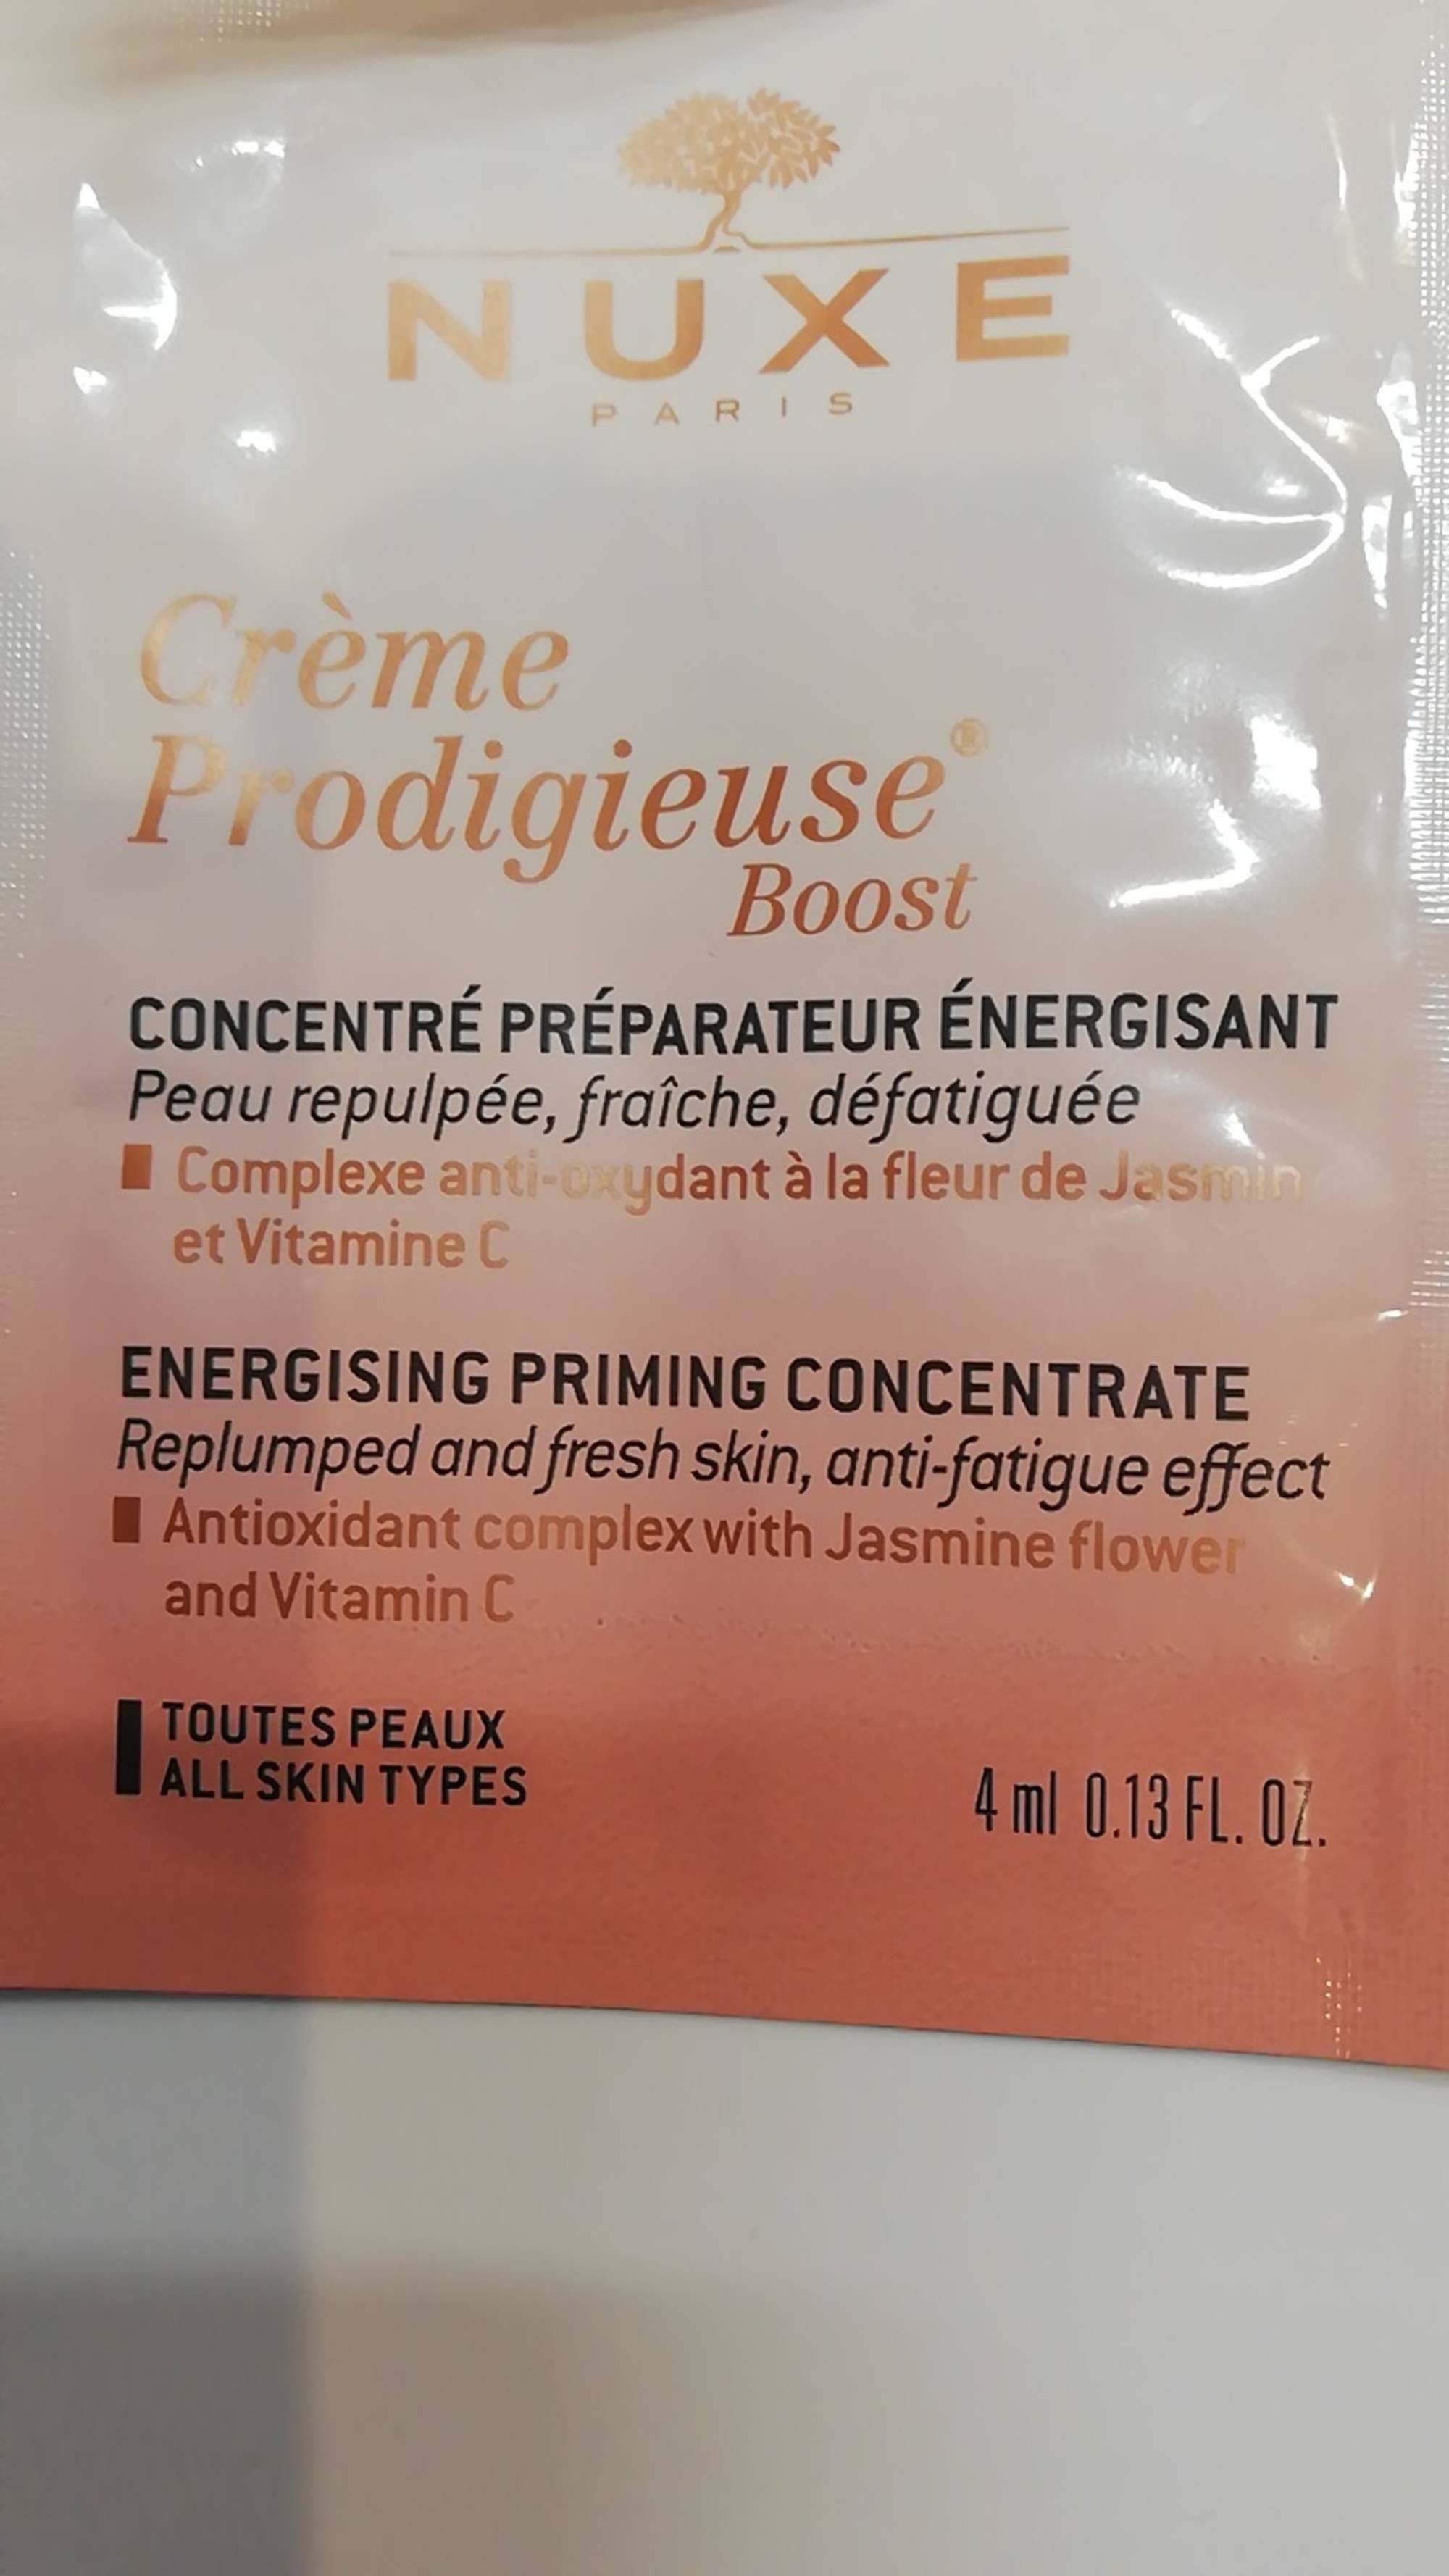 NUXE - Crème prodigieuse boost - Concentré préparateur énergisant